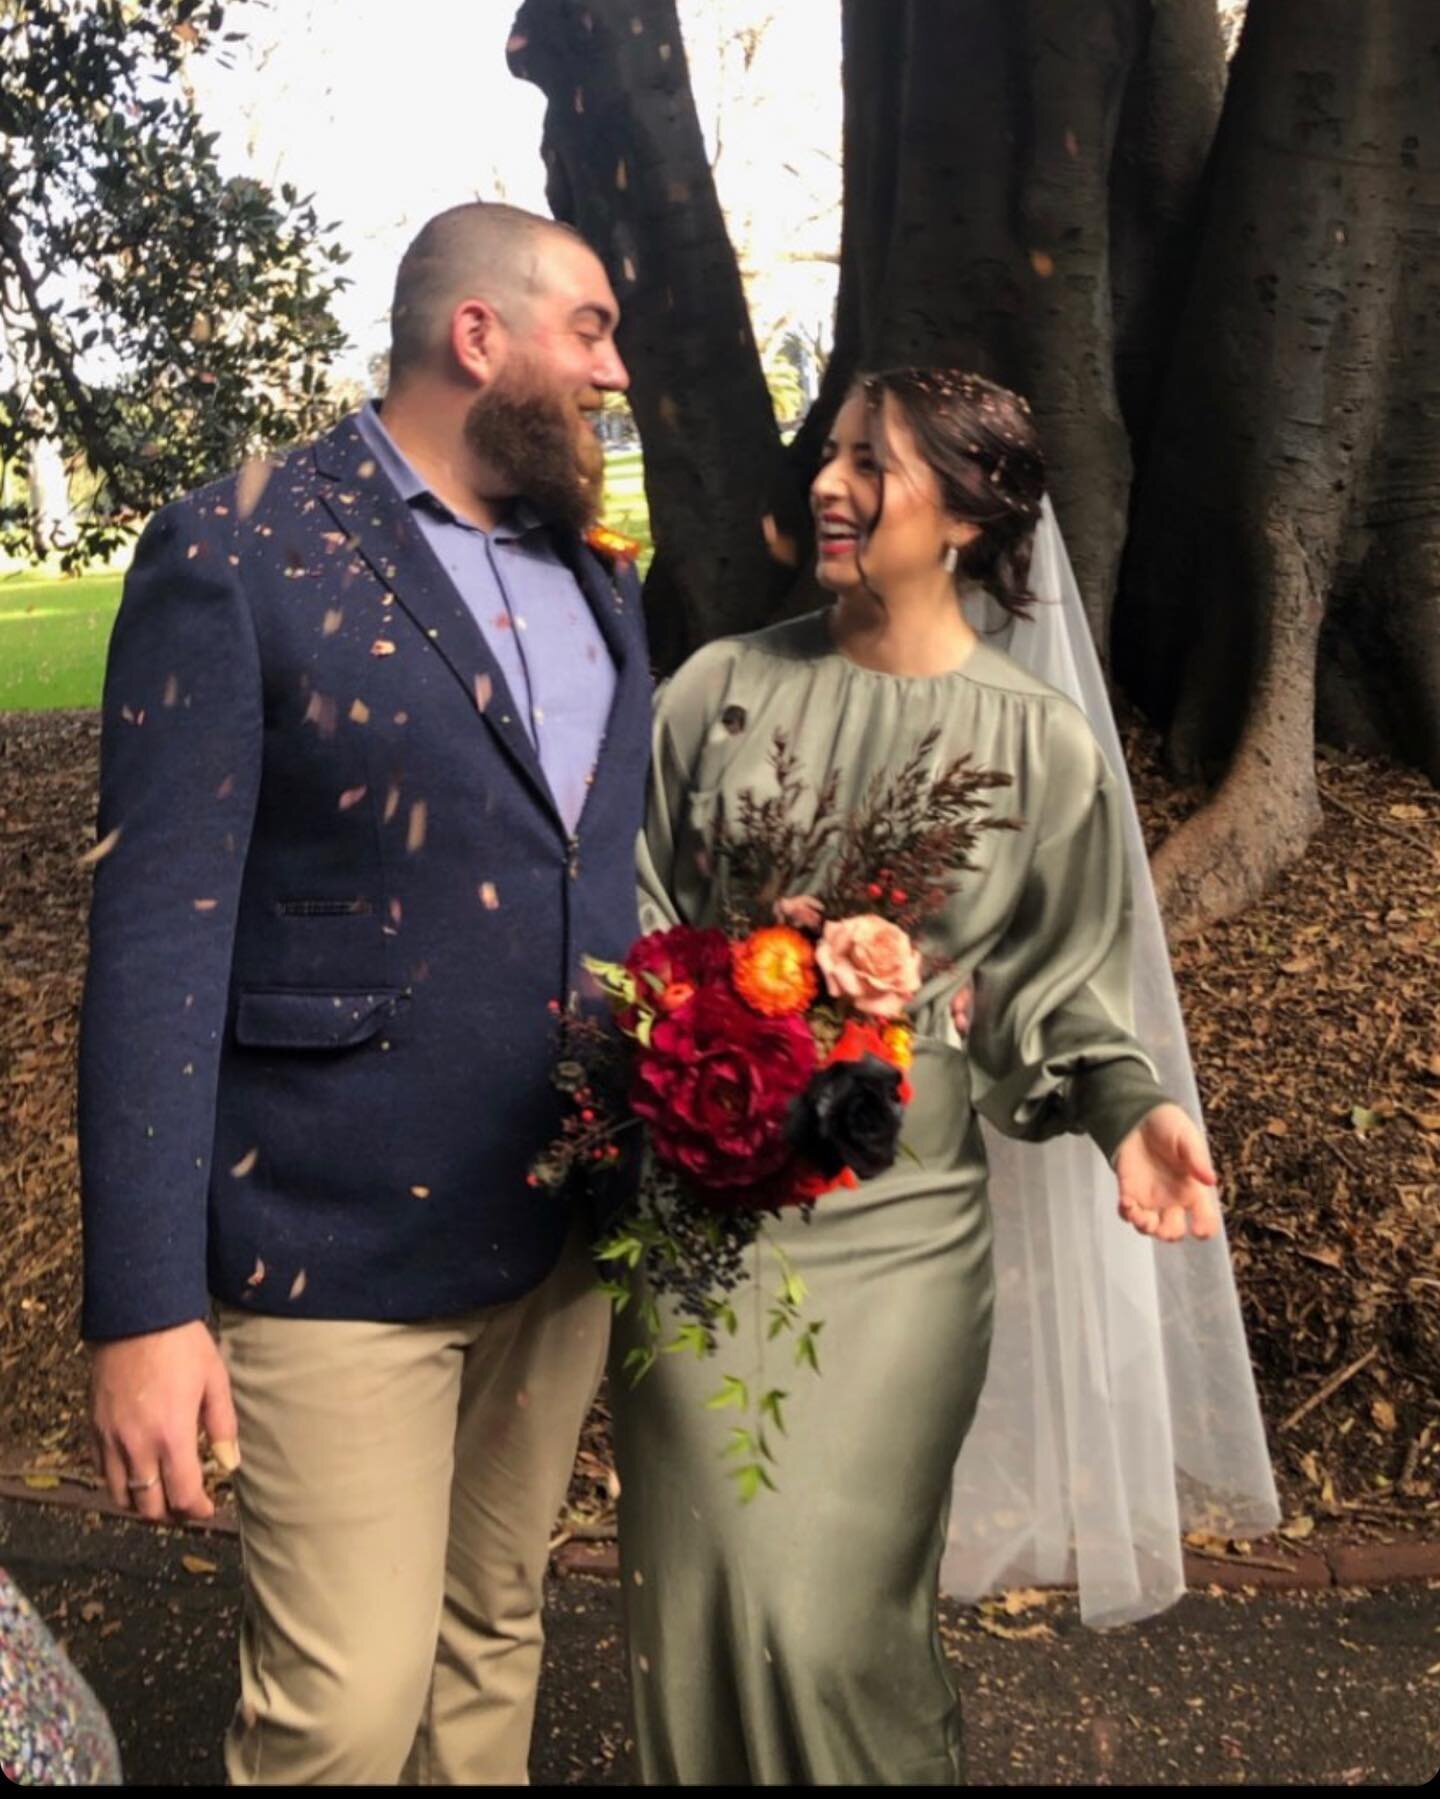 ✨ Our recent beautiful bride! ✨

.
.
.
.
.

#melbournehairdresser  #werribeehairdresser #wedding #bride #bridalhair  #Melbourne 
#werribeesalon